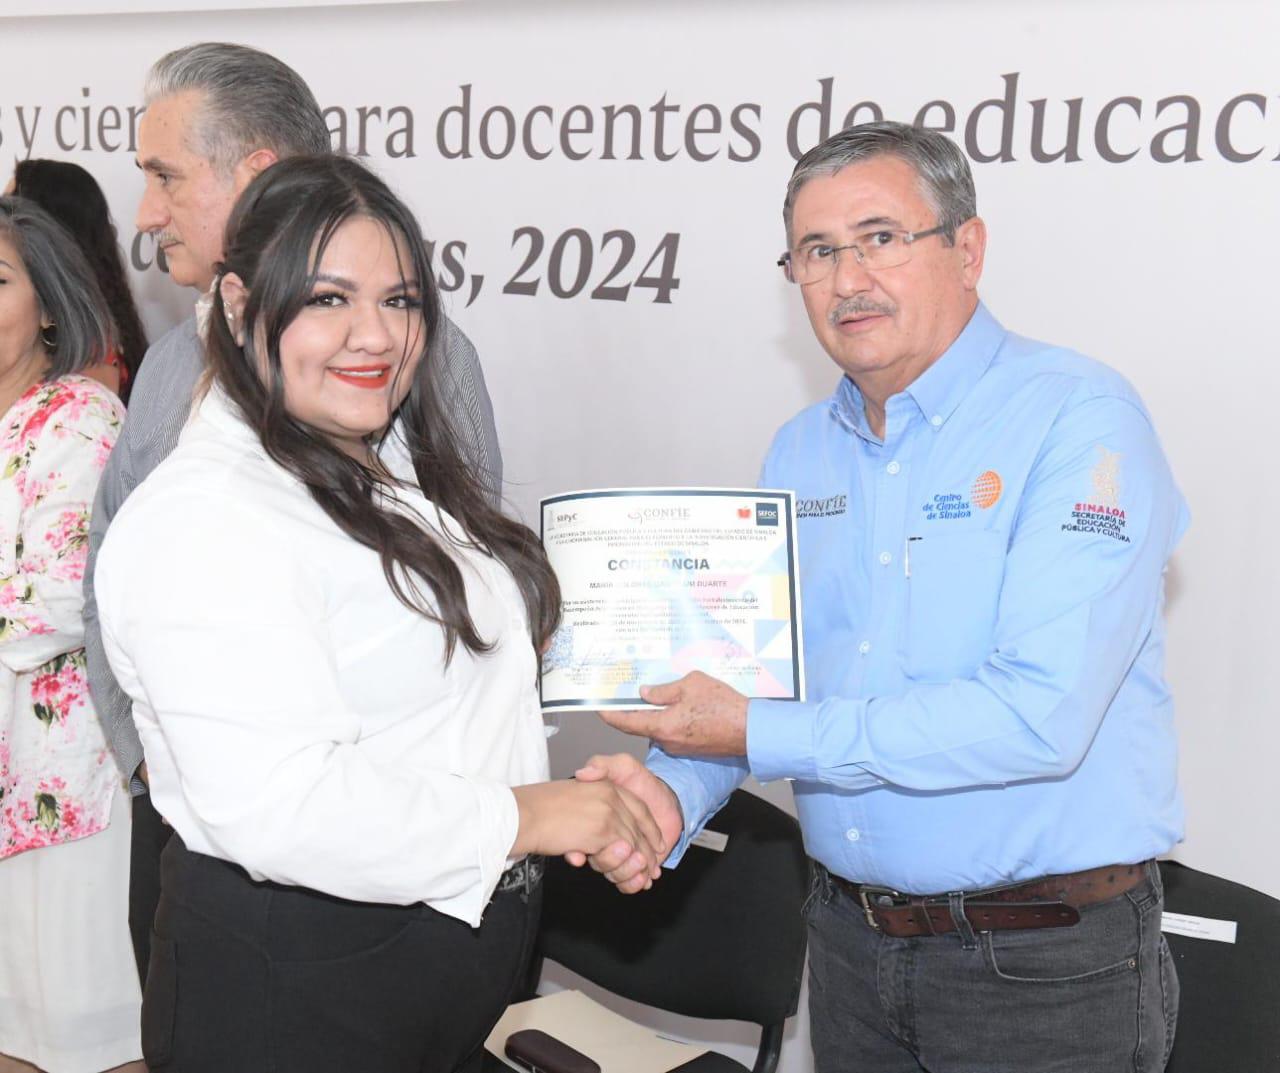 $!Reconocen a docentes de Sinaloa por participación en diplomados de matemáticas y ciencias